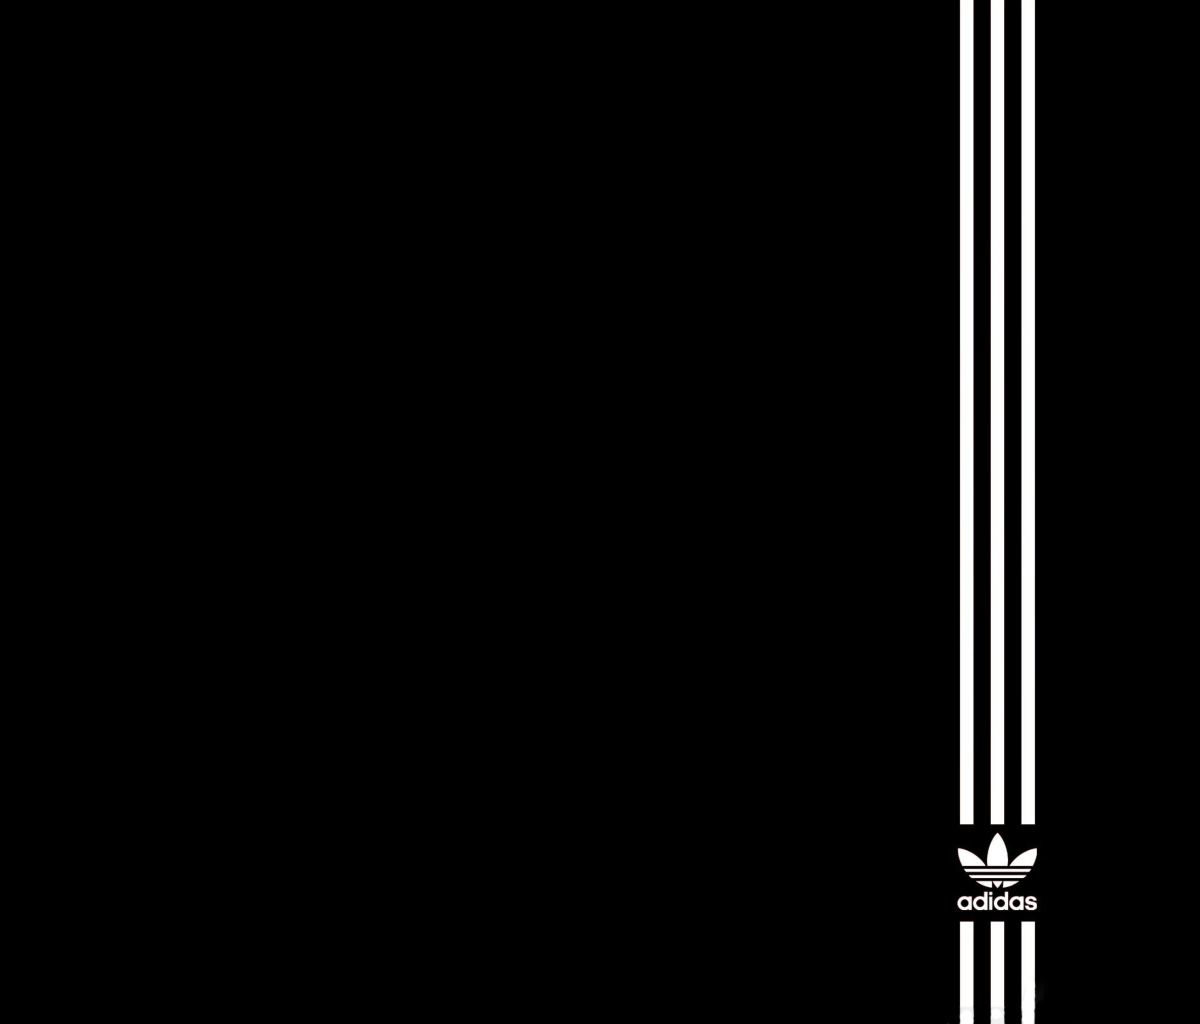 Das Adidas Original Wallpaper 1200x1024